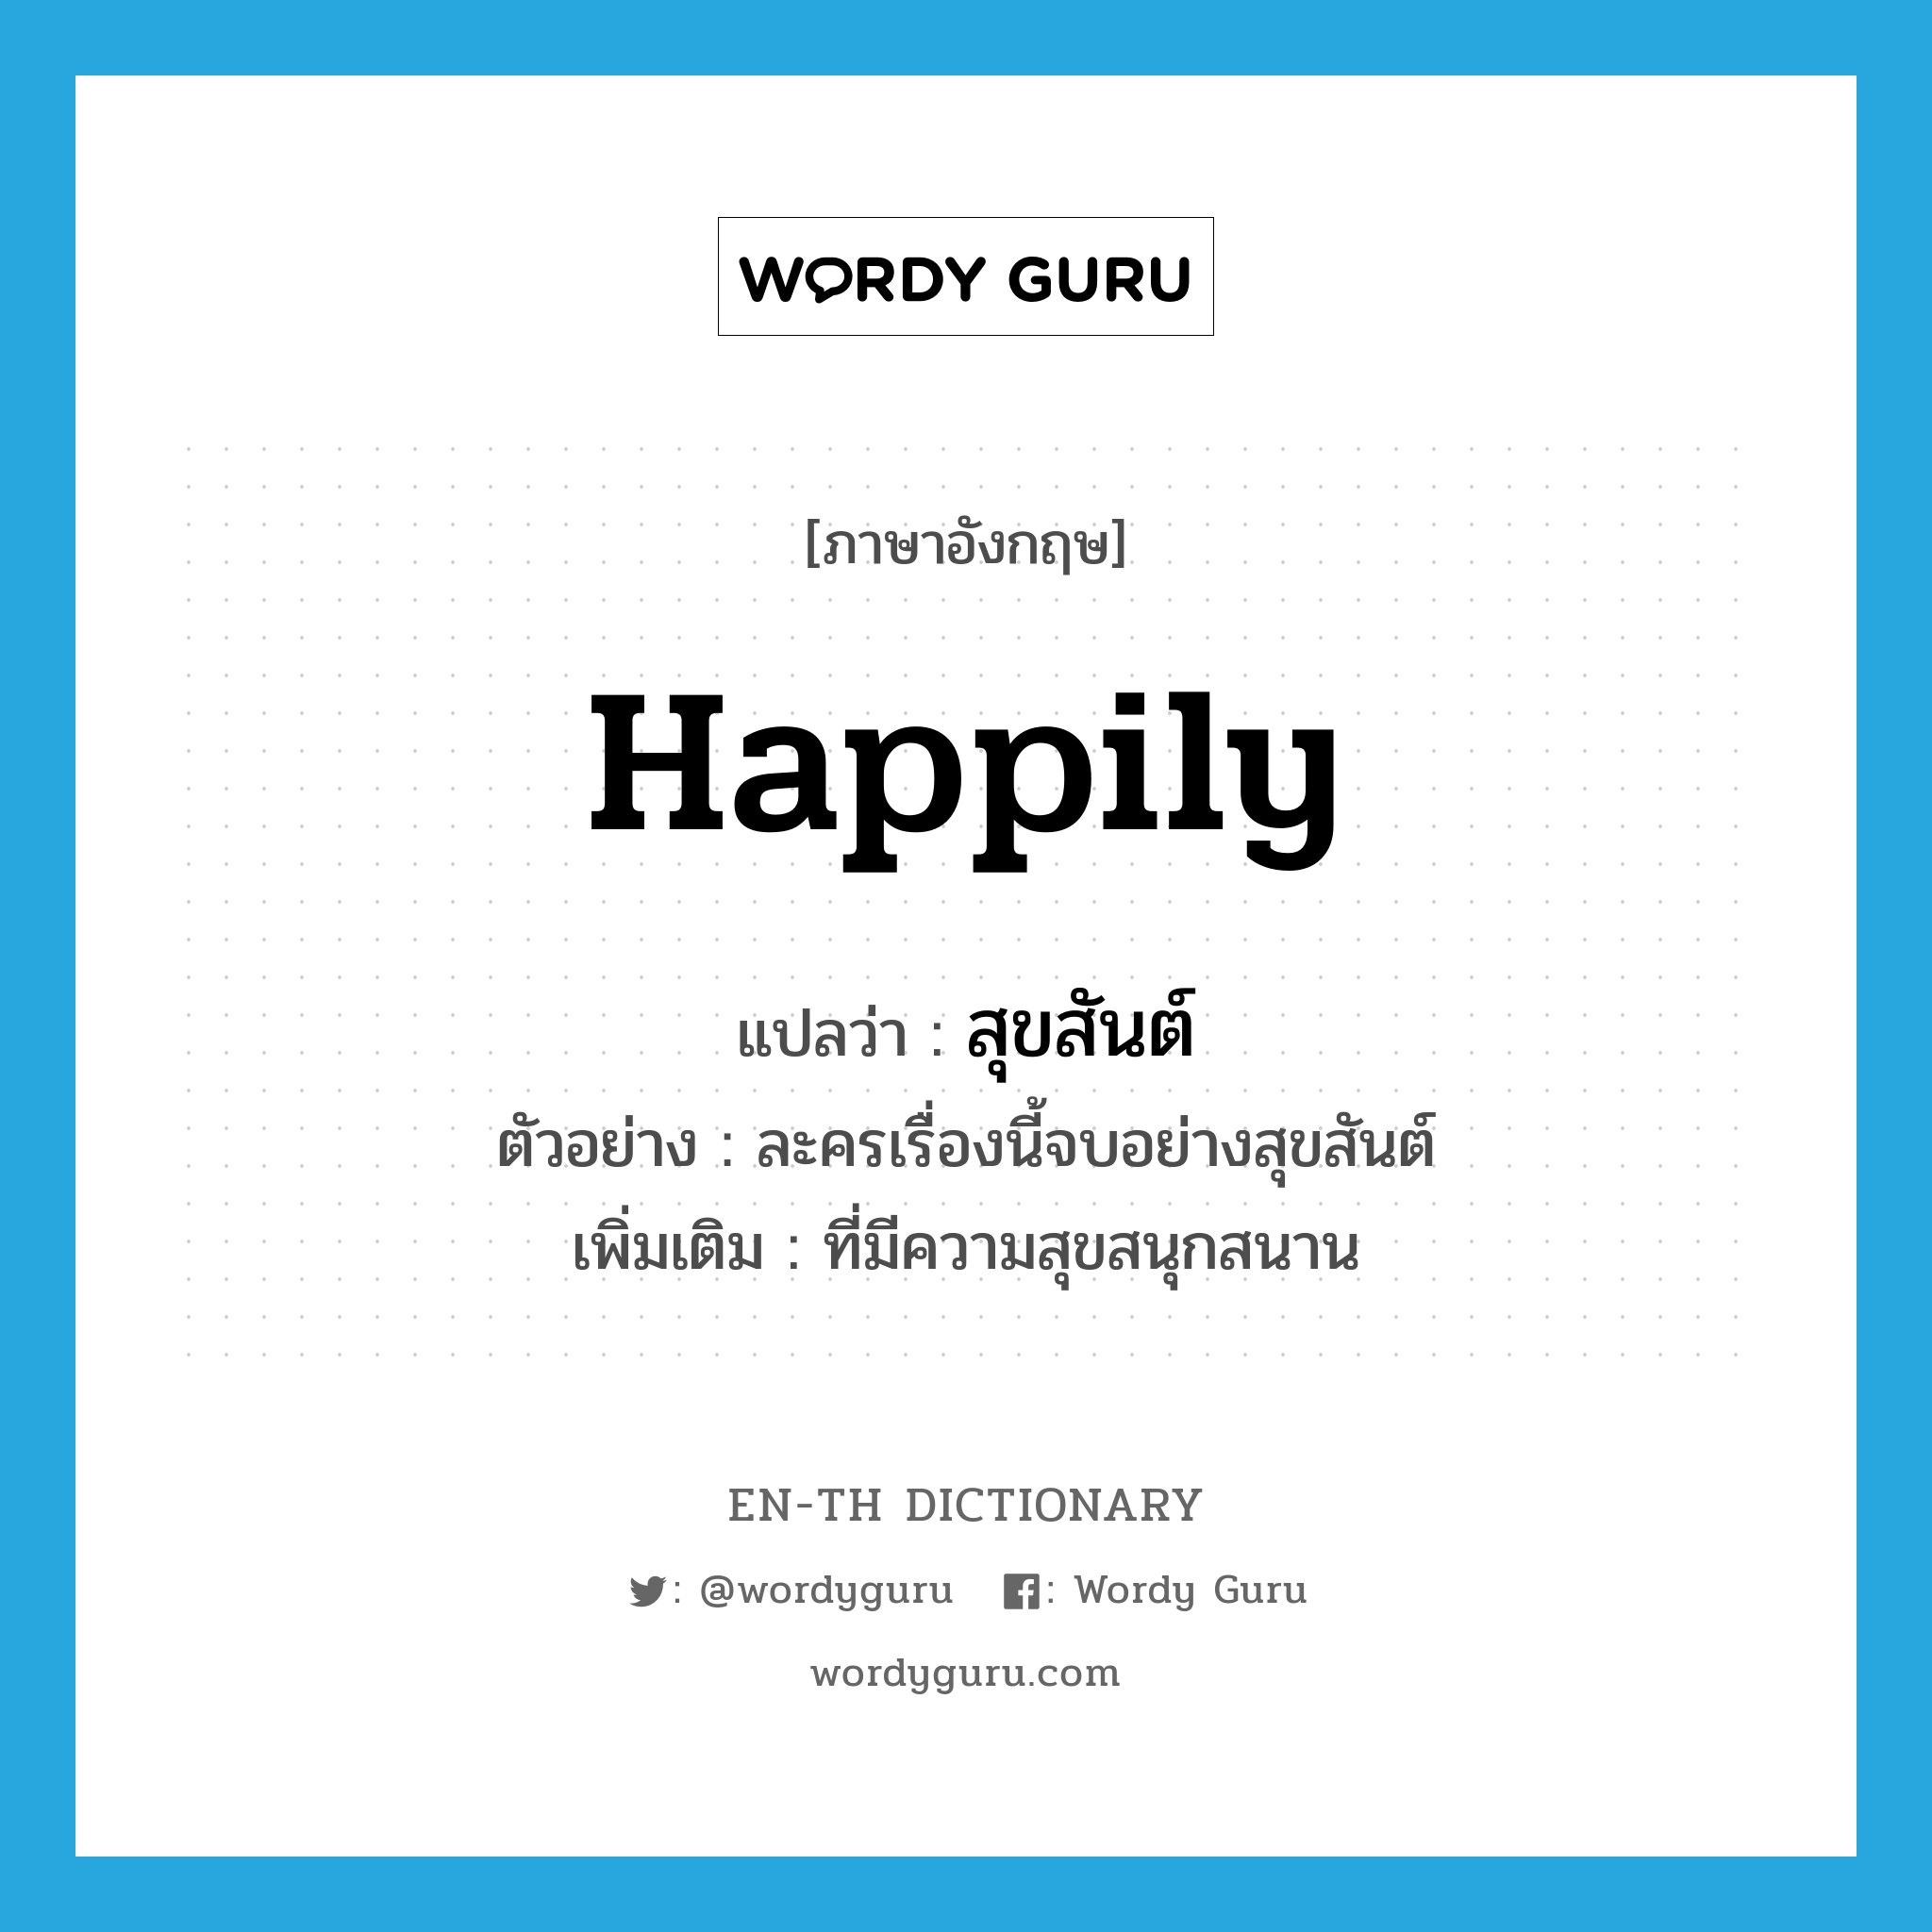 สุขสันต์ ภาษาอังกฤษ?, คำศัพท์ภาษาอังกฤษ สุขสันต์ แปลว่า happily ประเภท ADV ตัวอย่าง ละครเรื่องนี้จบอย่างสุขสันต์ เพิ่มเติม ที่มีความสุขสนุกสนาน หมวด ADV